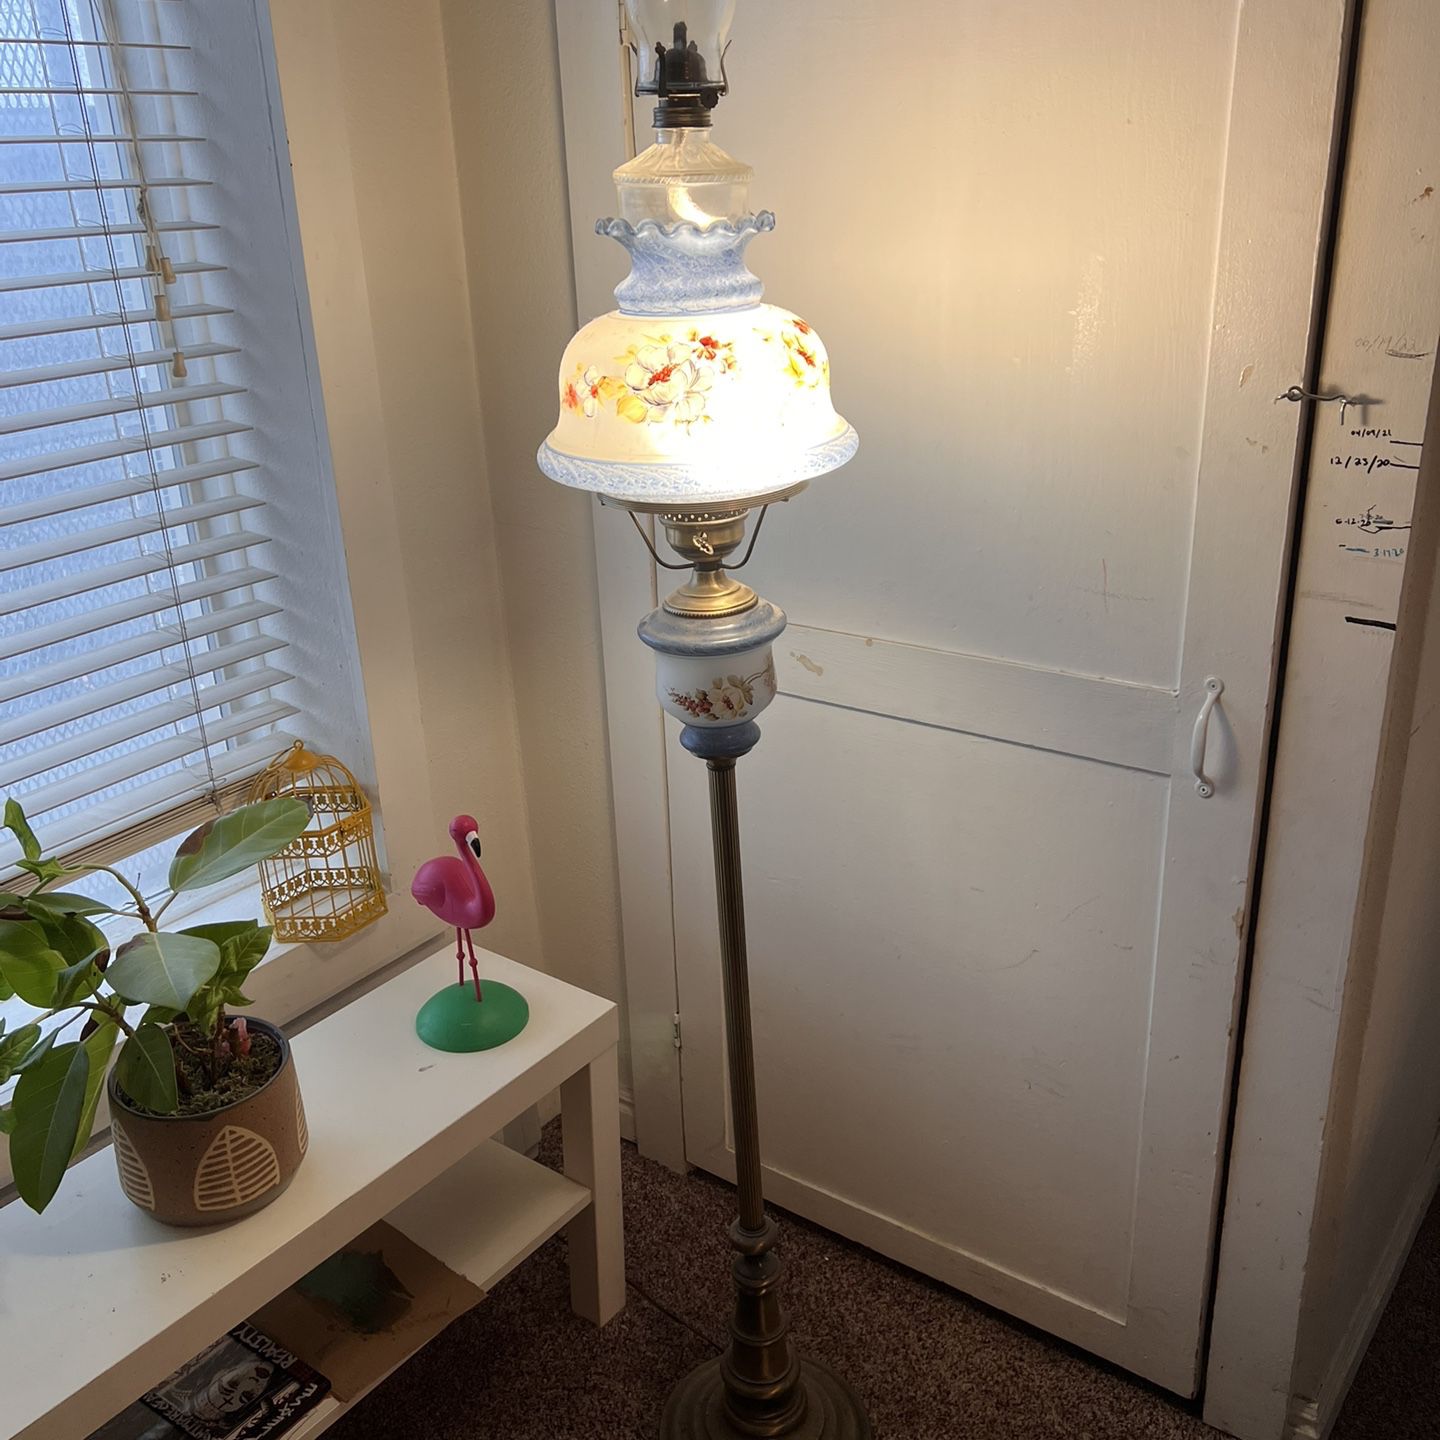 Quoizel Vintage Lamp 1941 With Farms Lqmp Light Gqs Attachment 